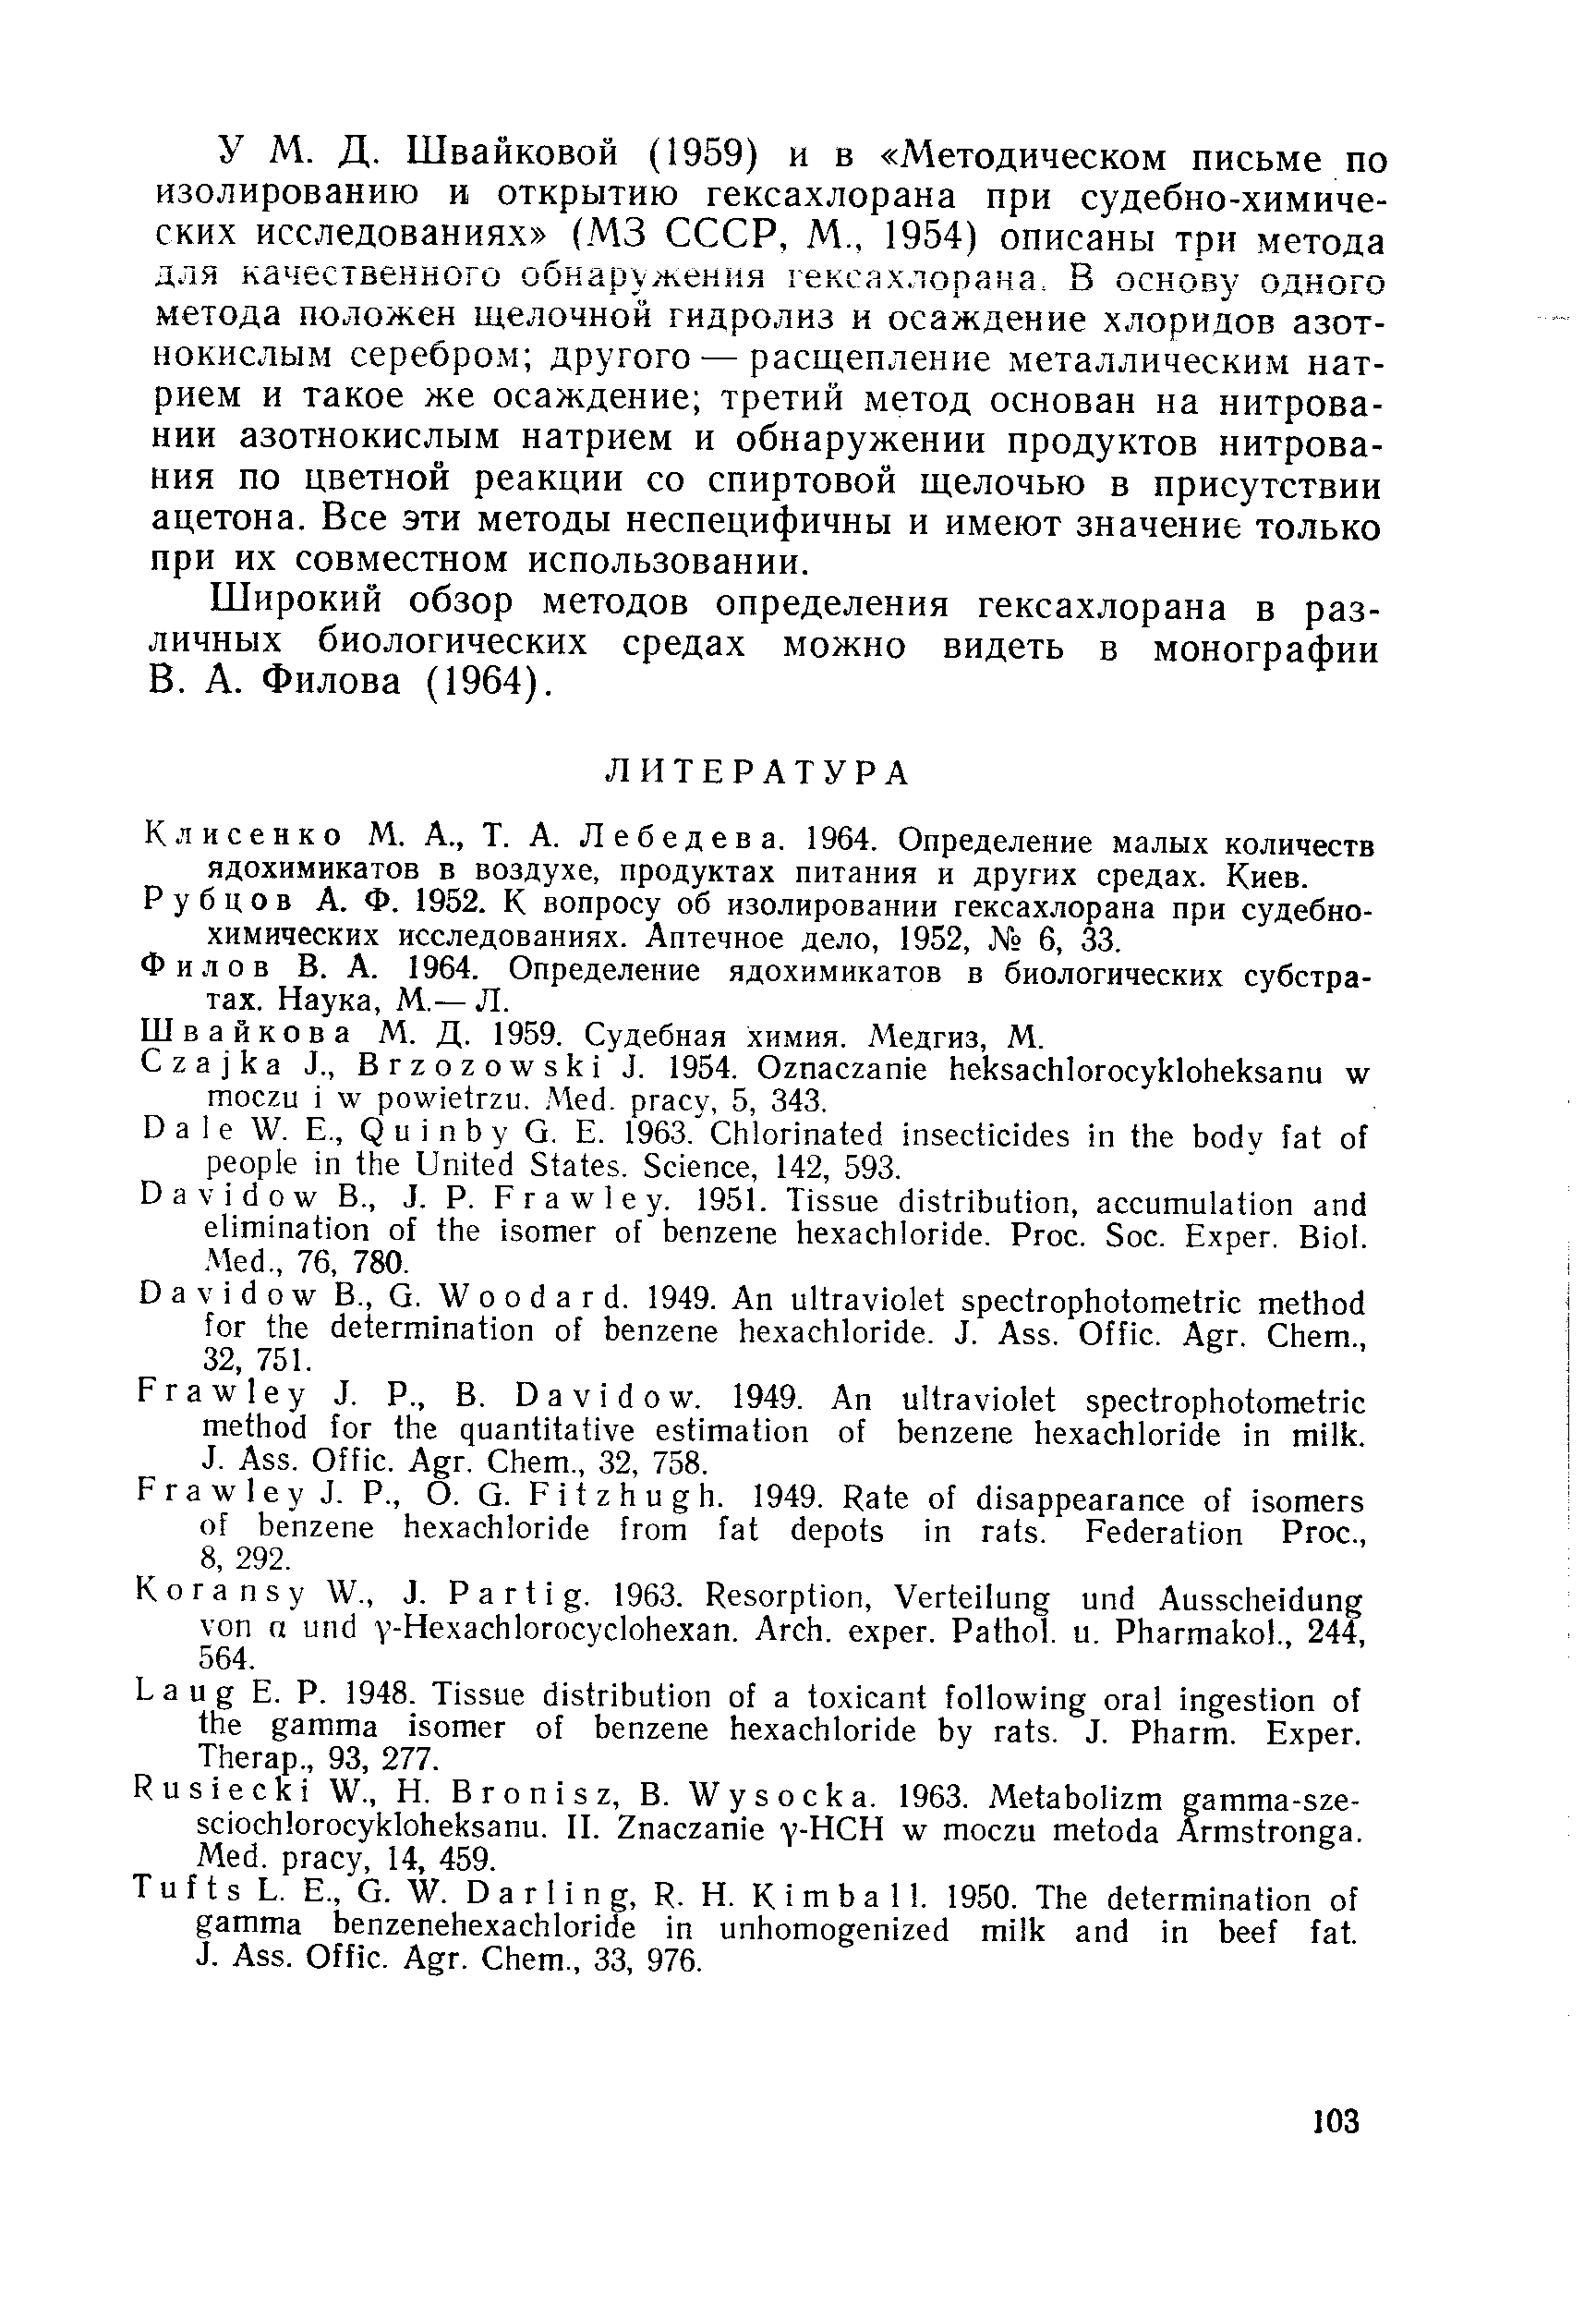 Широкий обзор методов определения гексахлорана в различных биологических средах можно видеть в монографии В. А. Филова (1964).